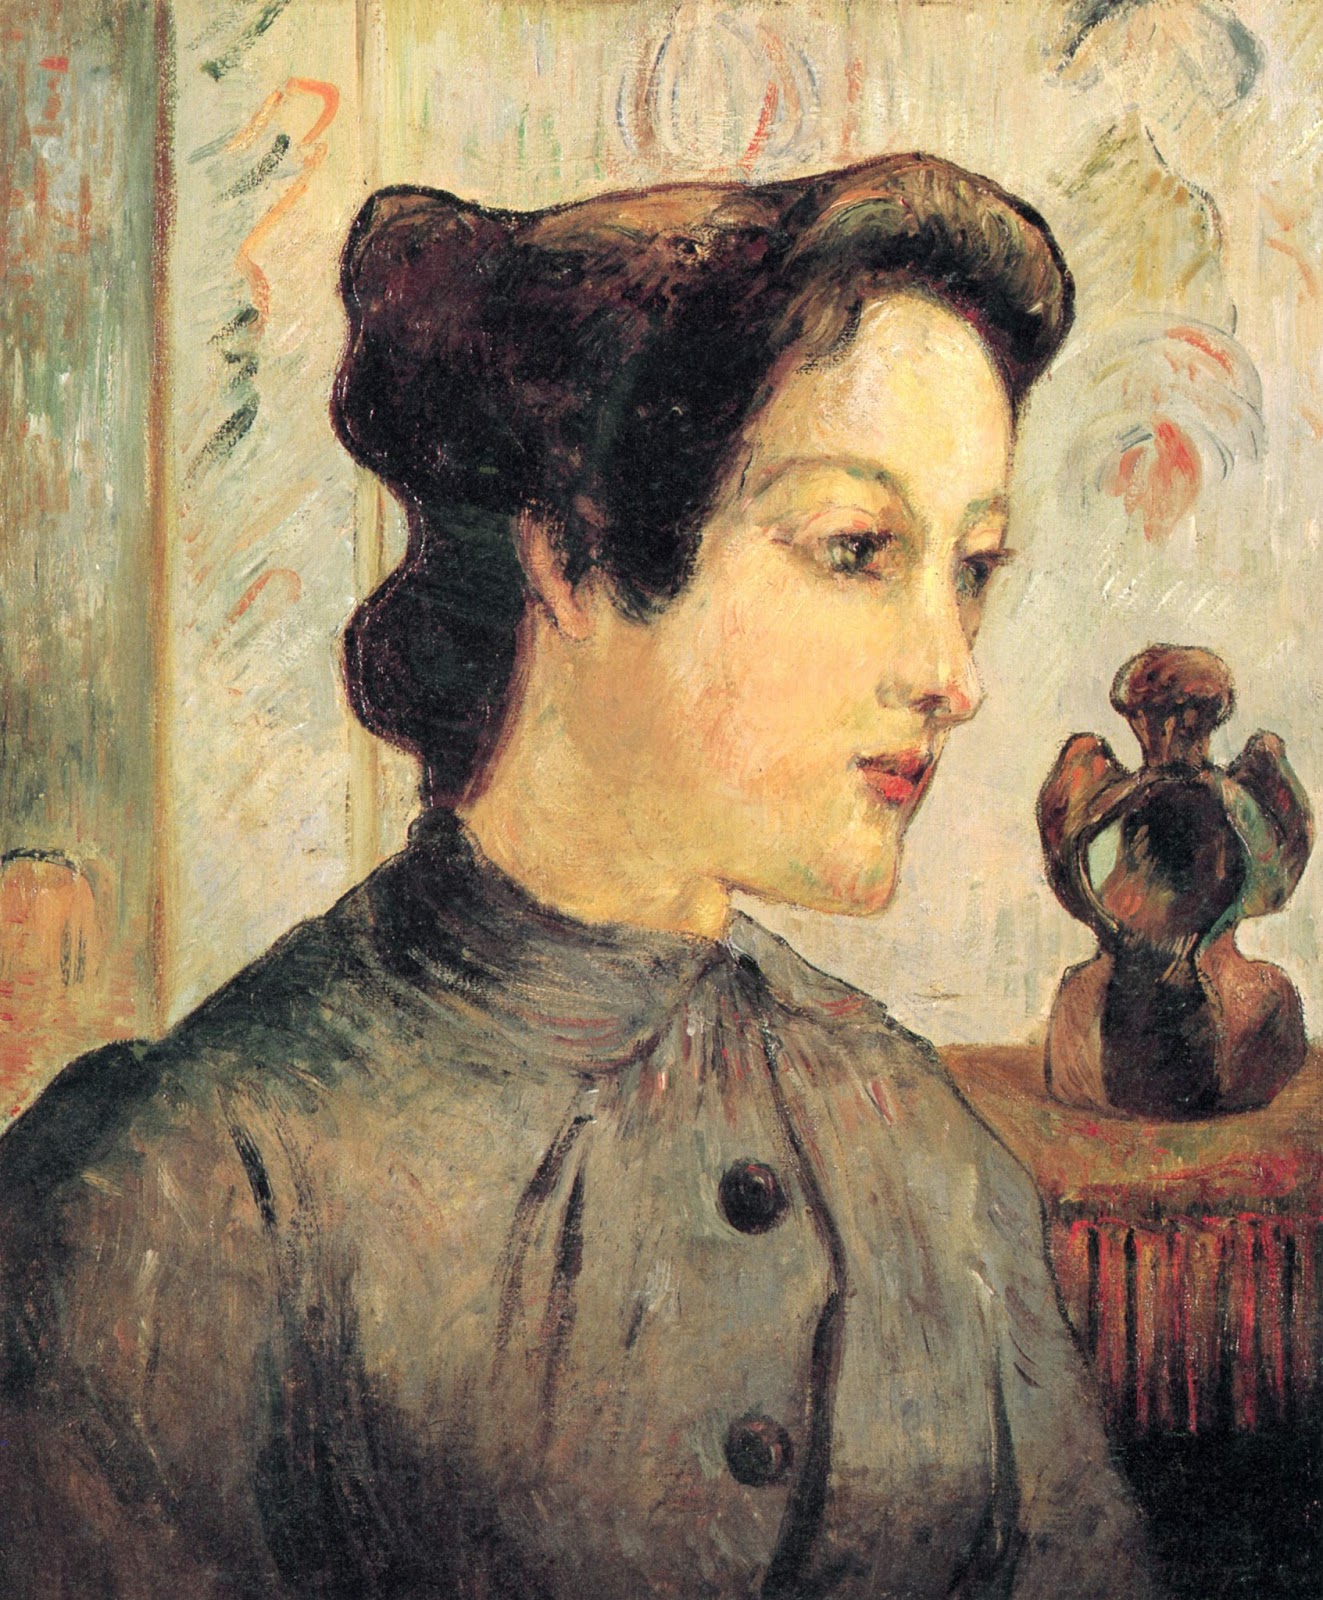 Paul+Gauguin-1848-1903 (399).jpg